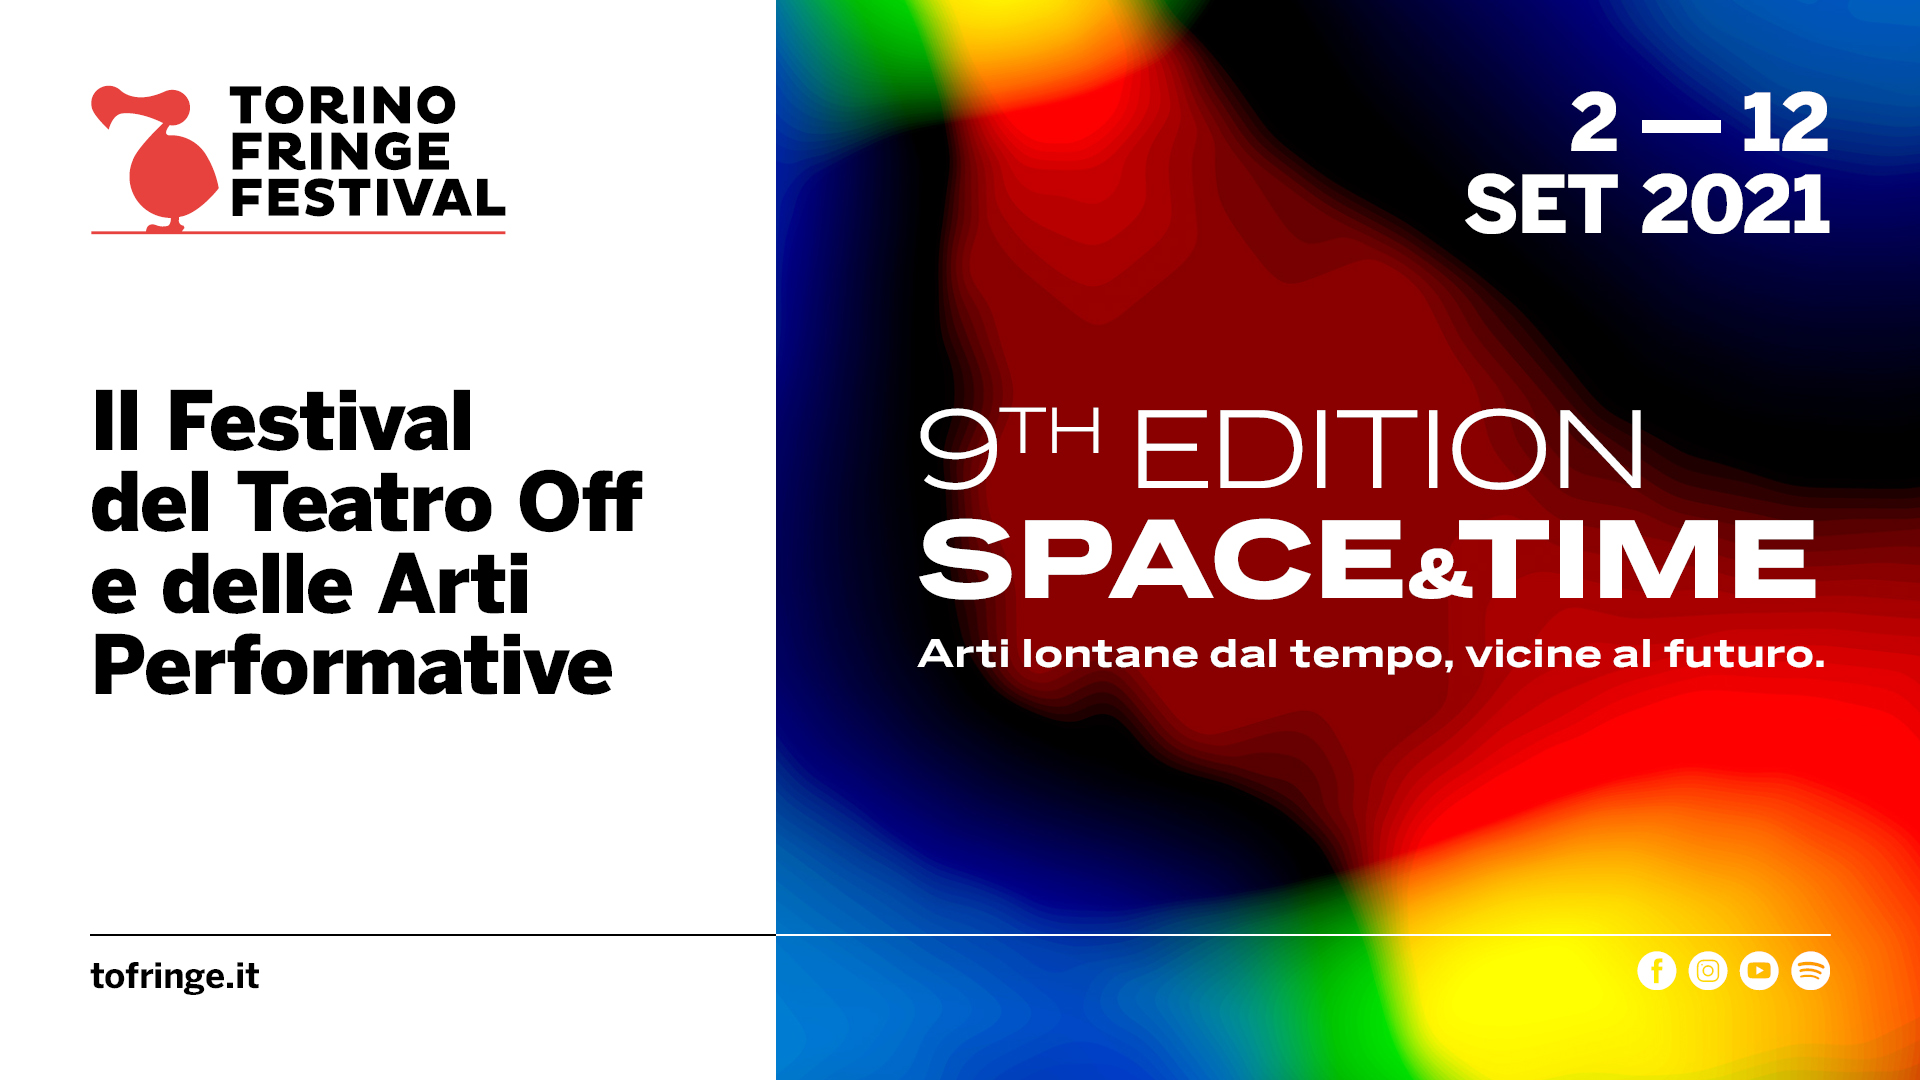 Torino Fringe Festival 2021 "Space&Time" - 9th Edition// 2-12 sett 2021